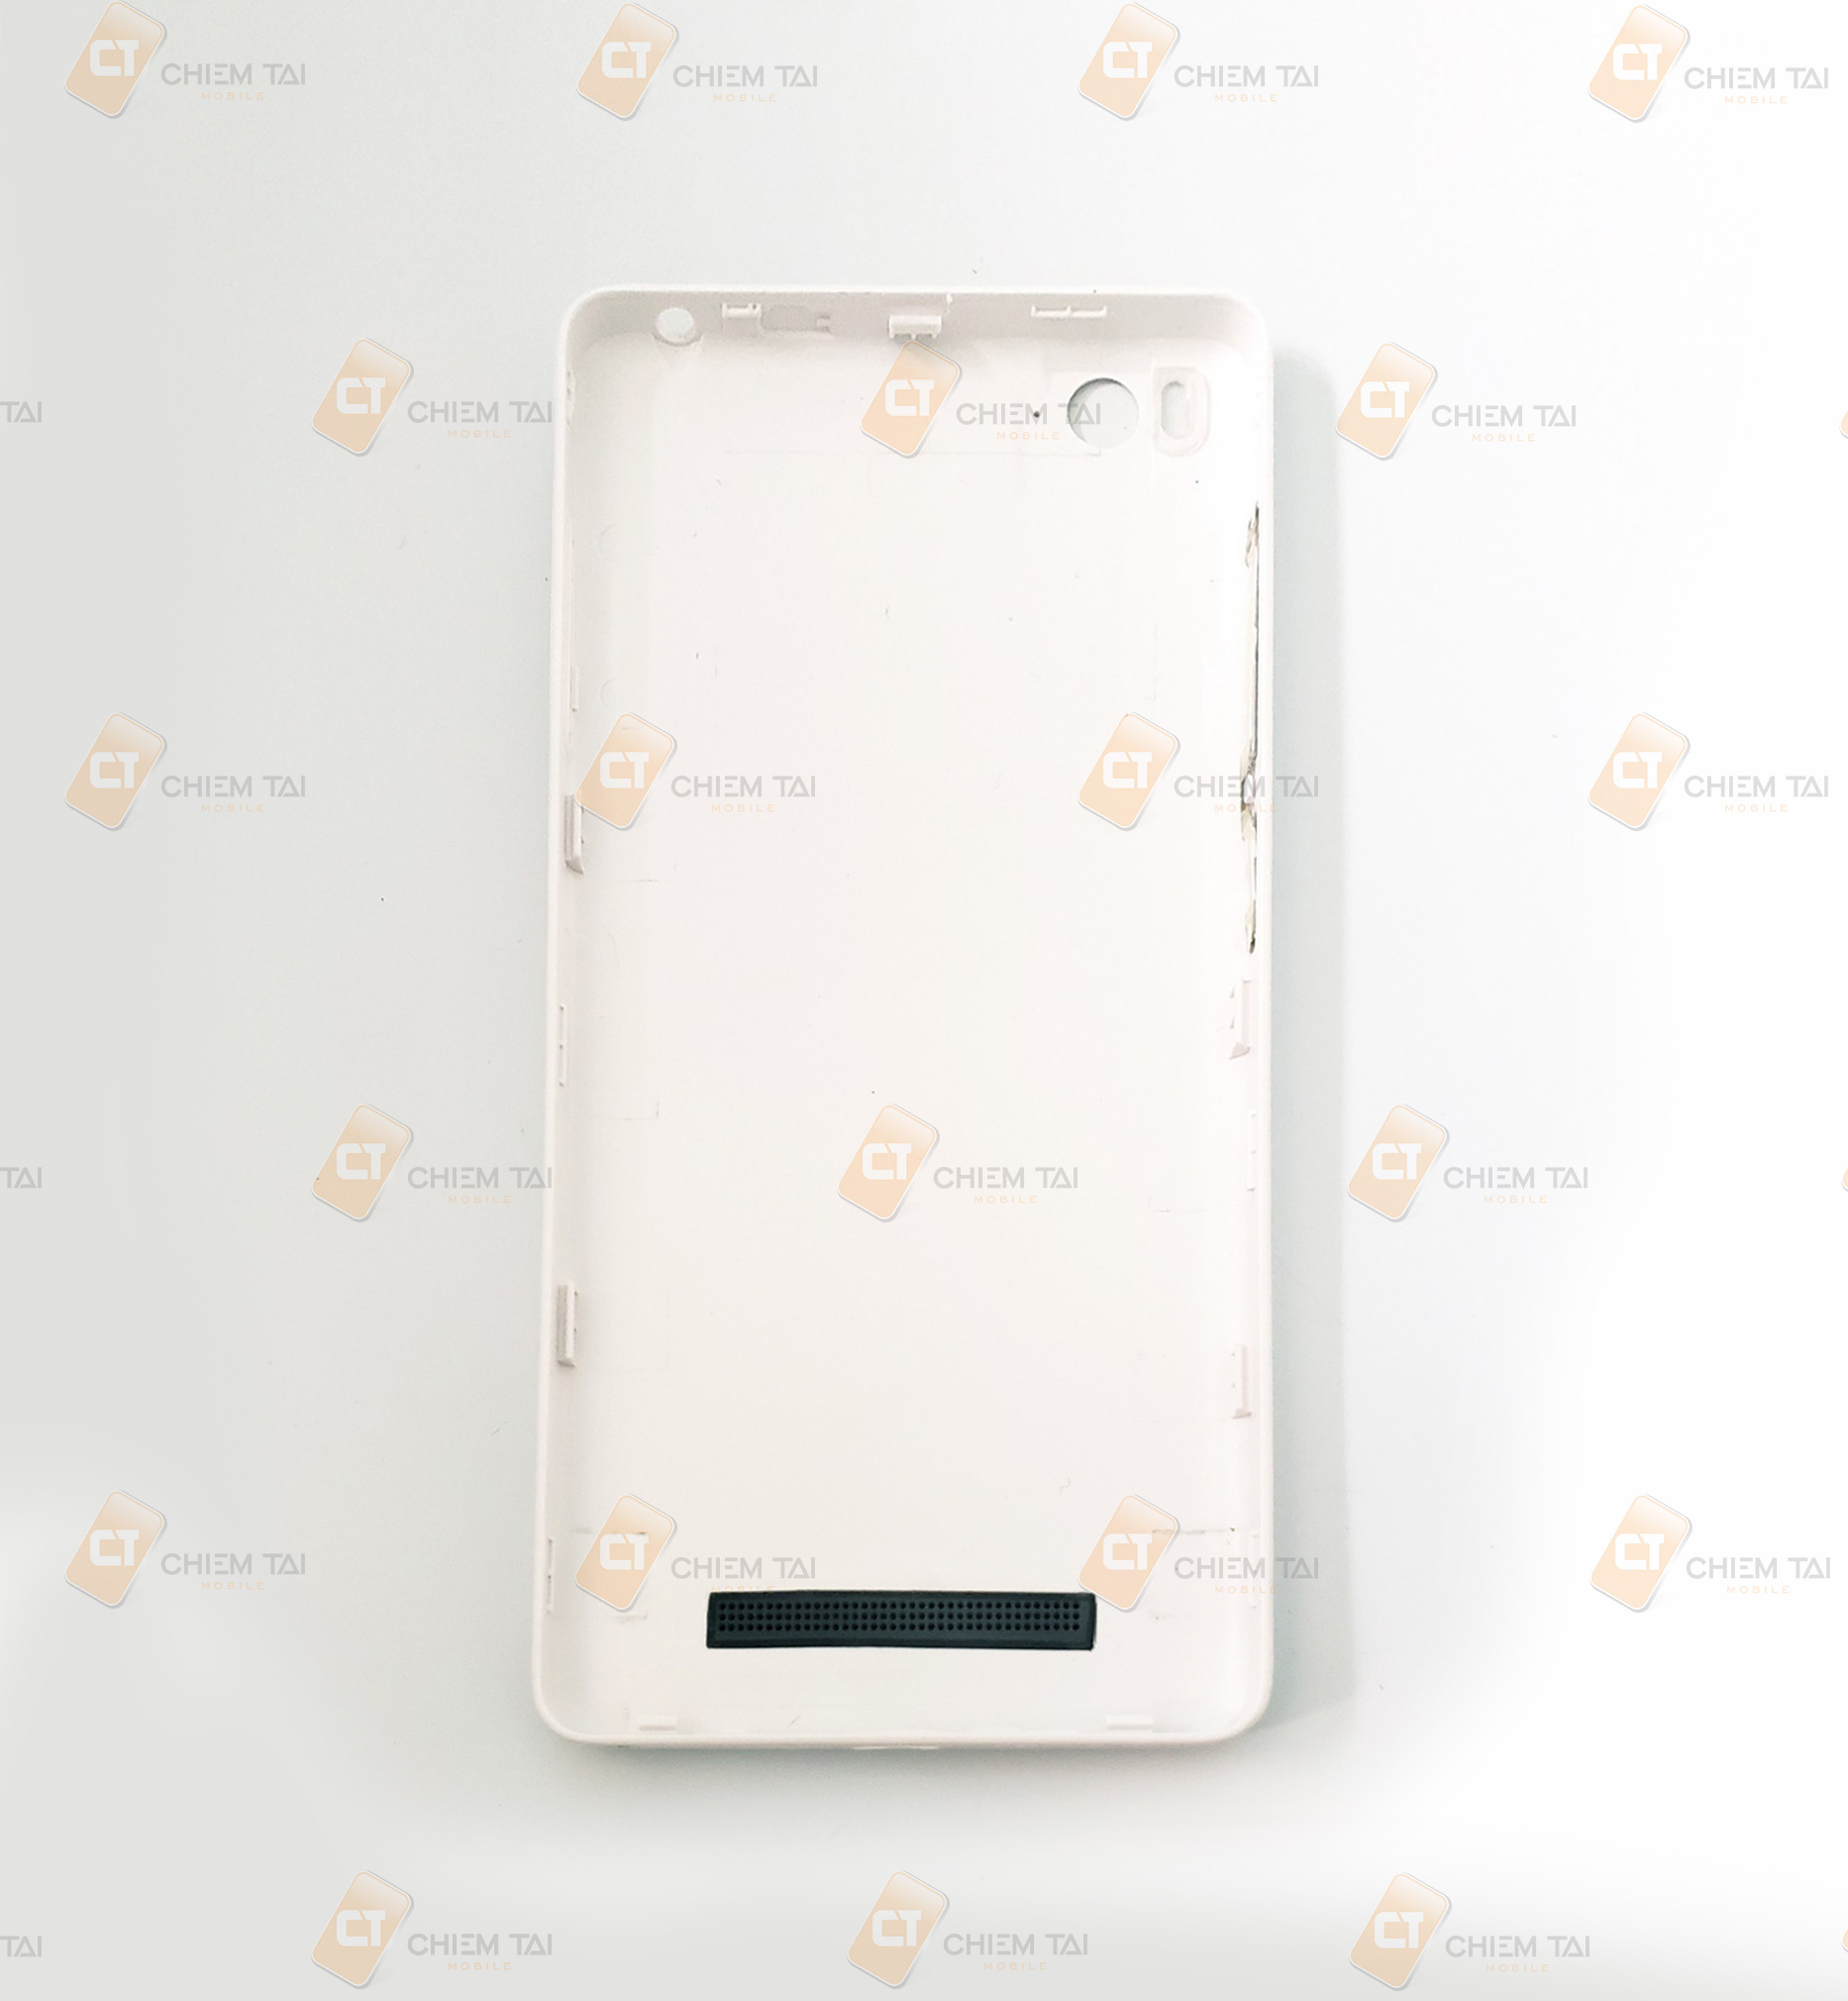 Nắp lưng, nút nguồn, nút volume Xiaomi Mi 4i  (màu đen, trắng)